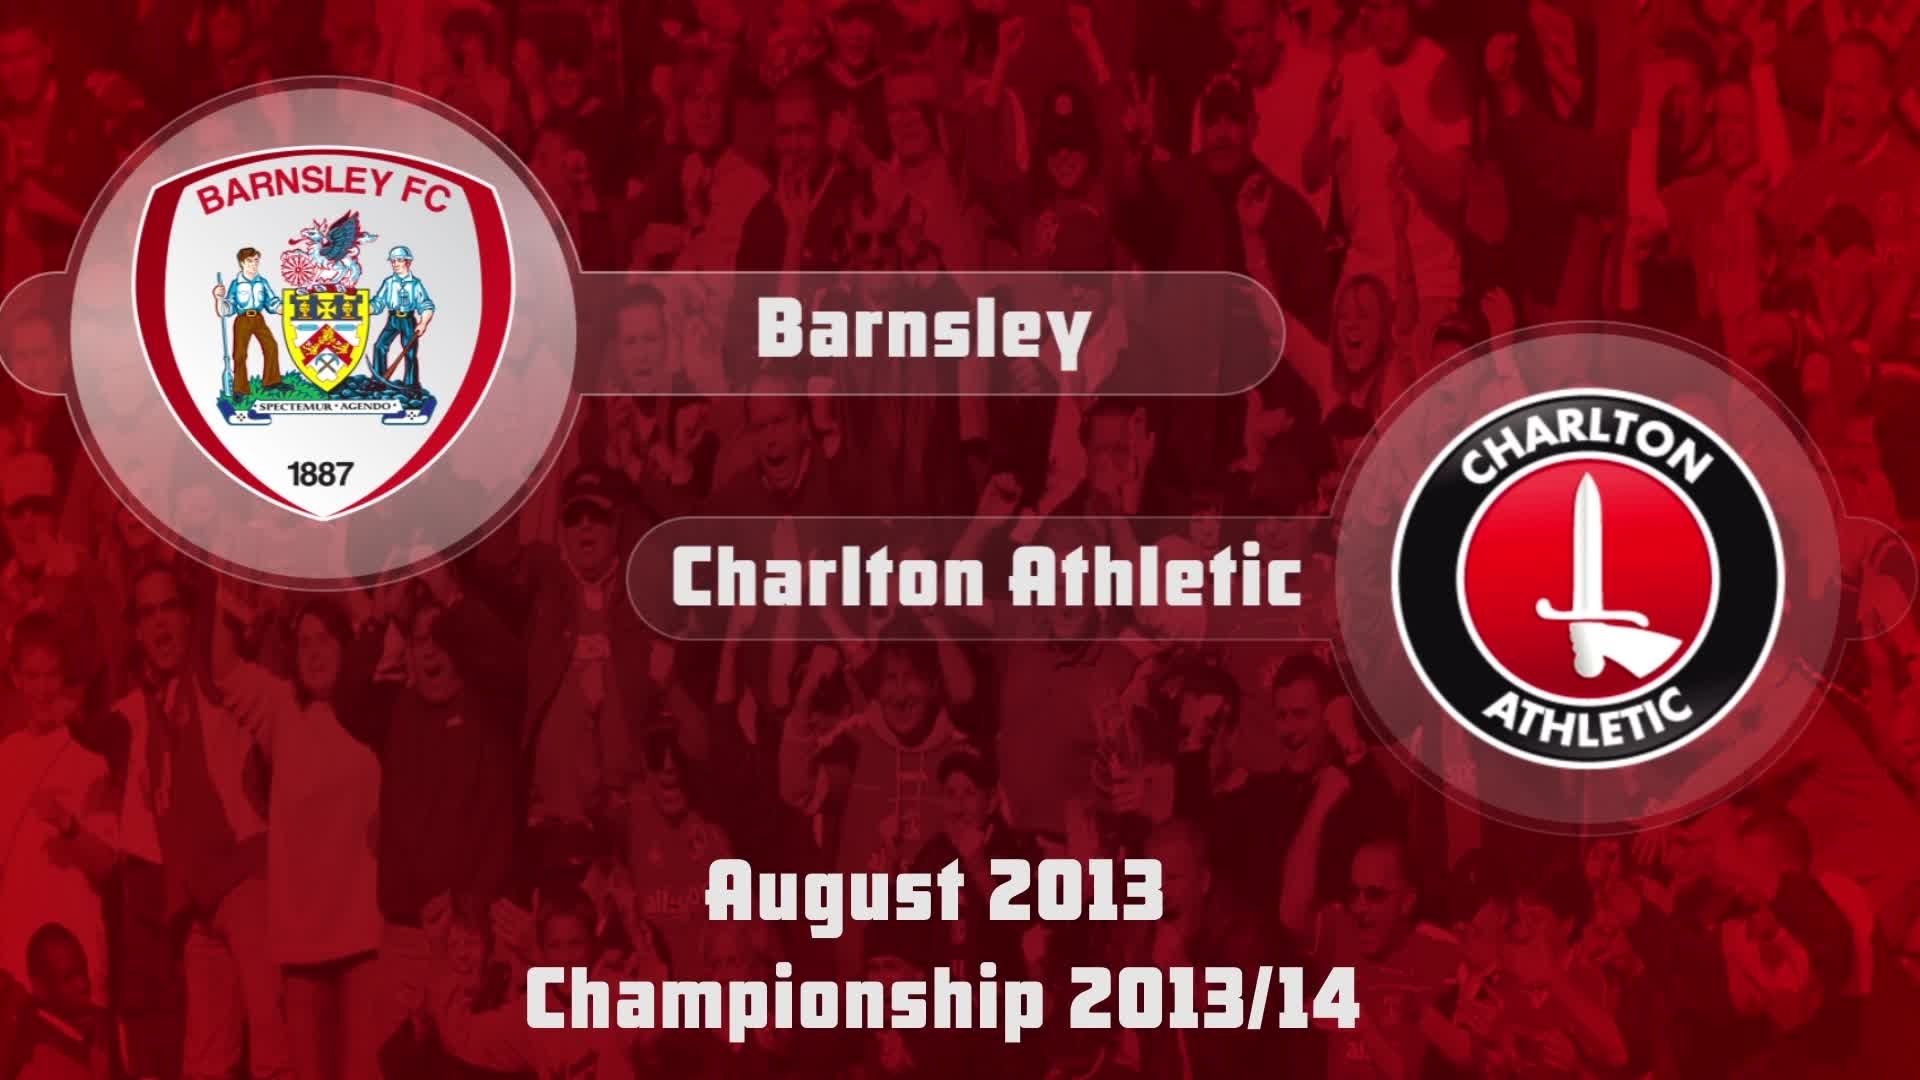 04 HIGHLIGHTS | Barnsley 2 Charlton 2 (Aug 2013)